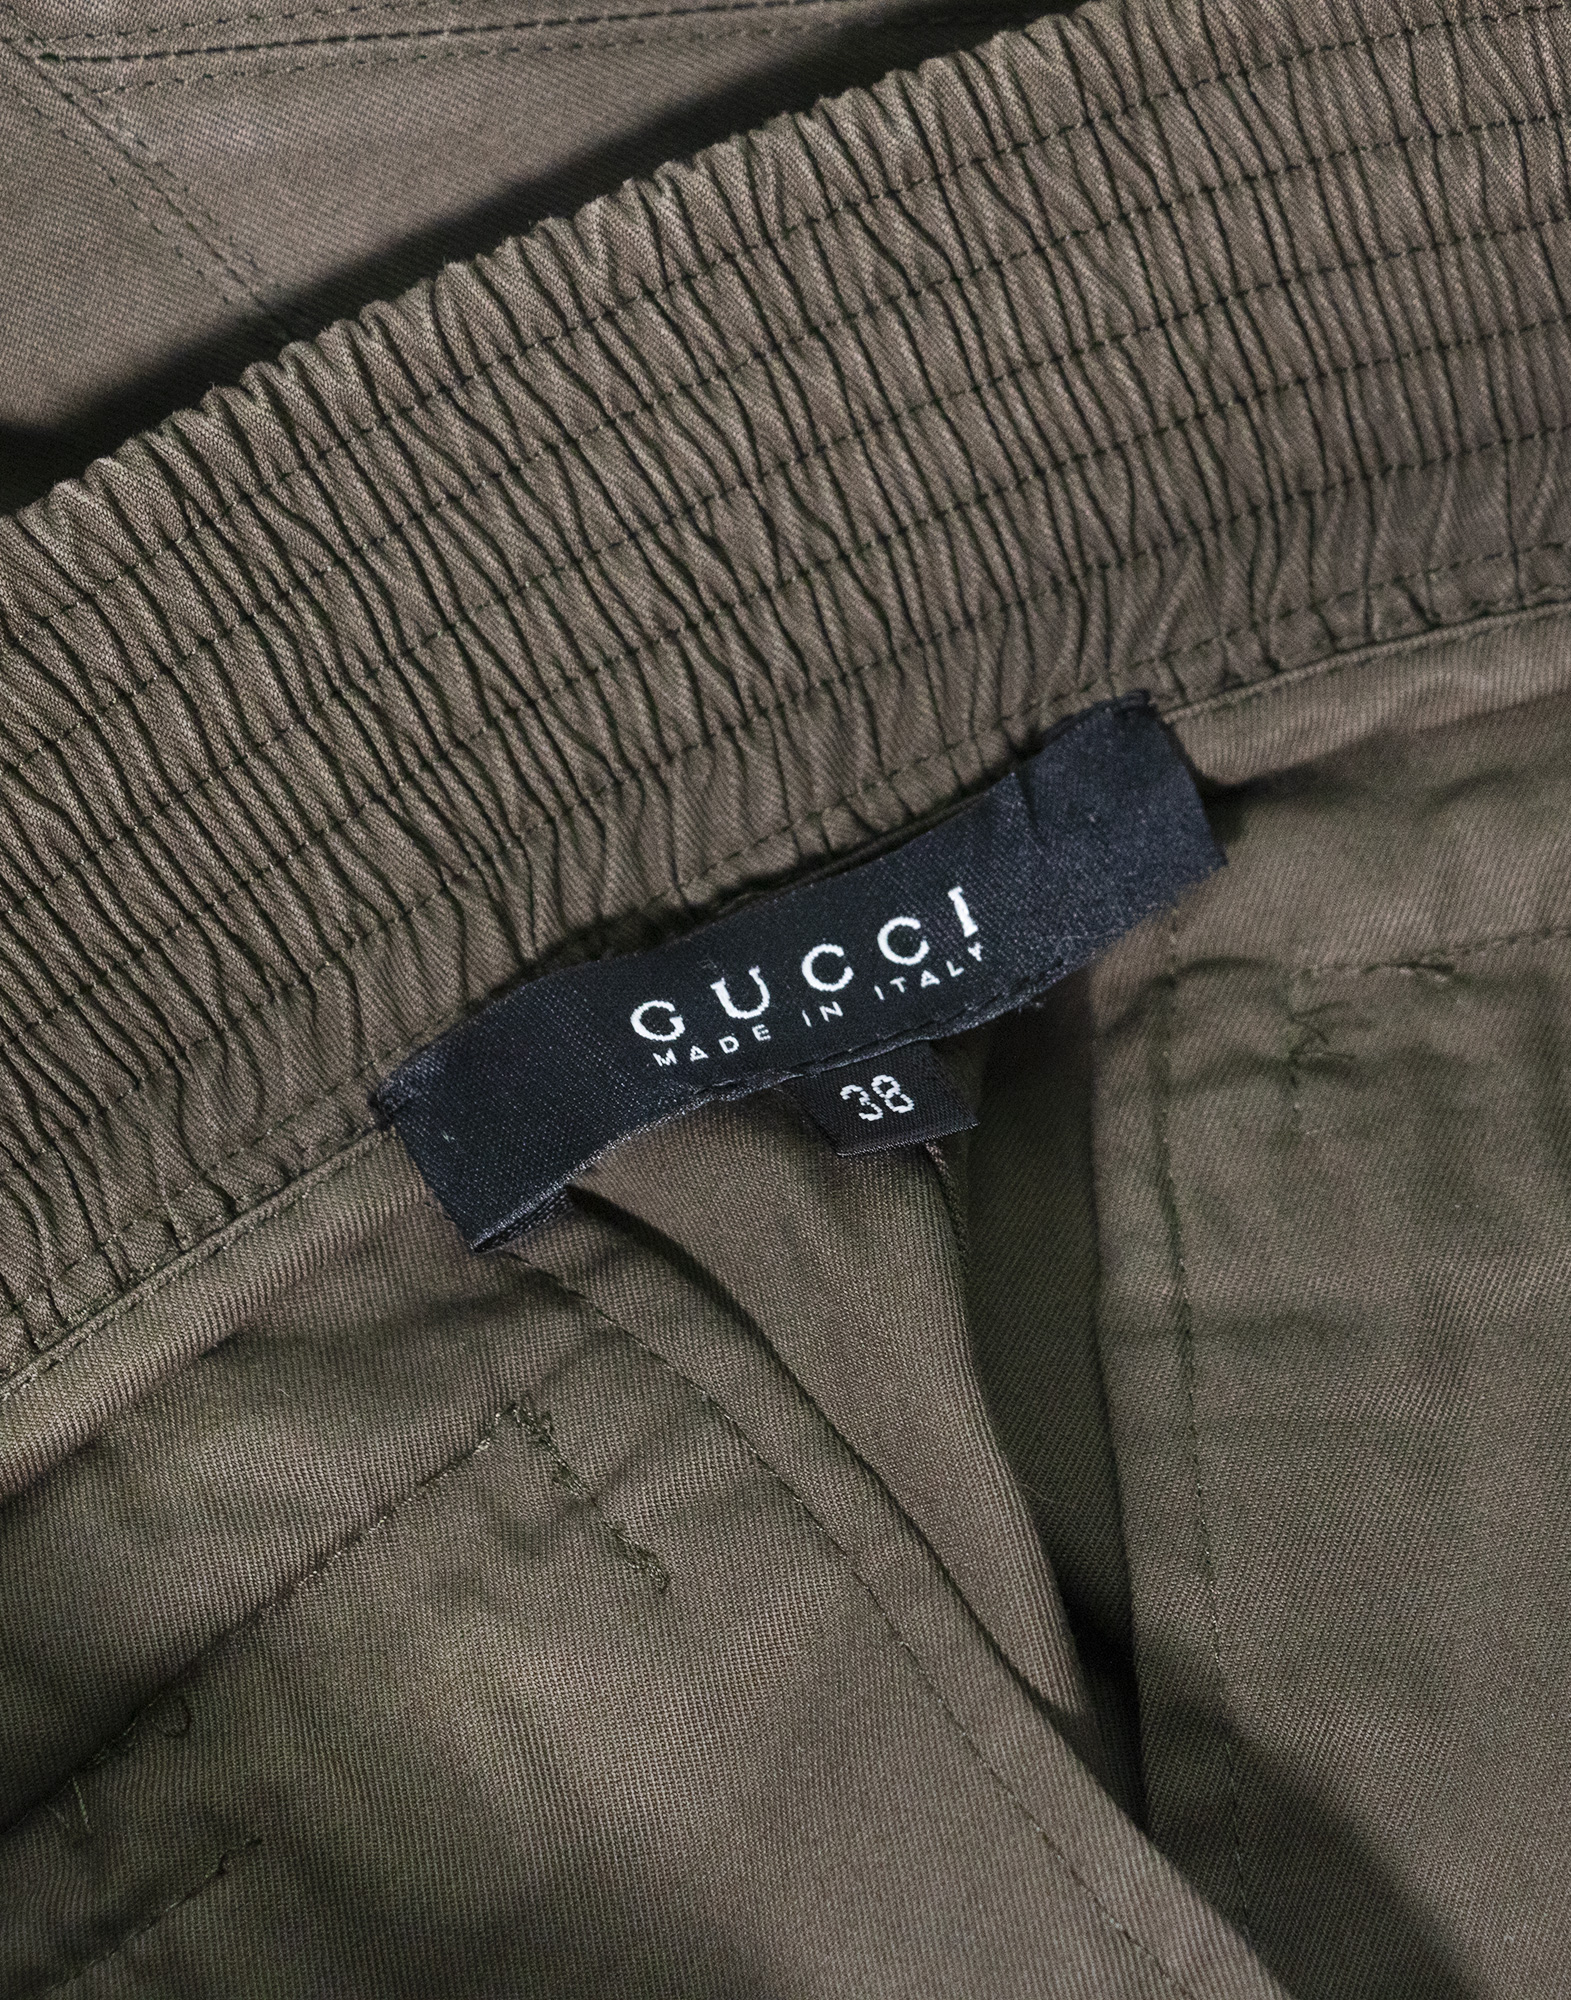 Gucci - Gonna in cotone verde militare